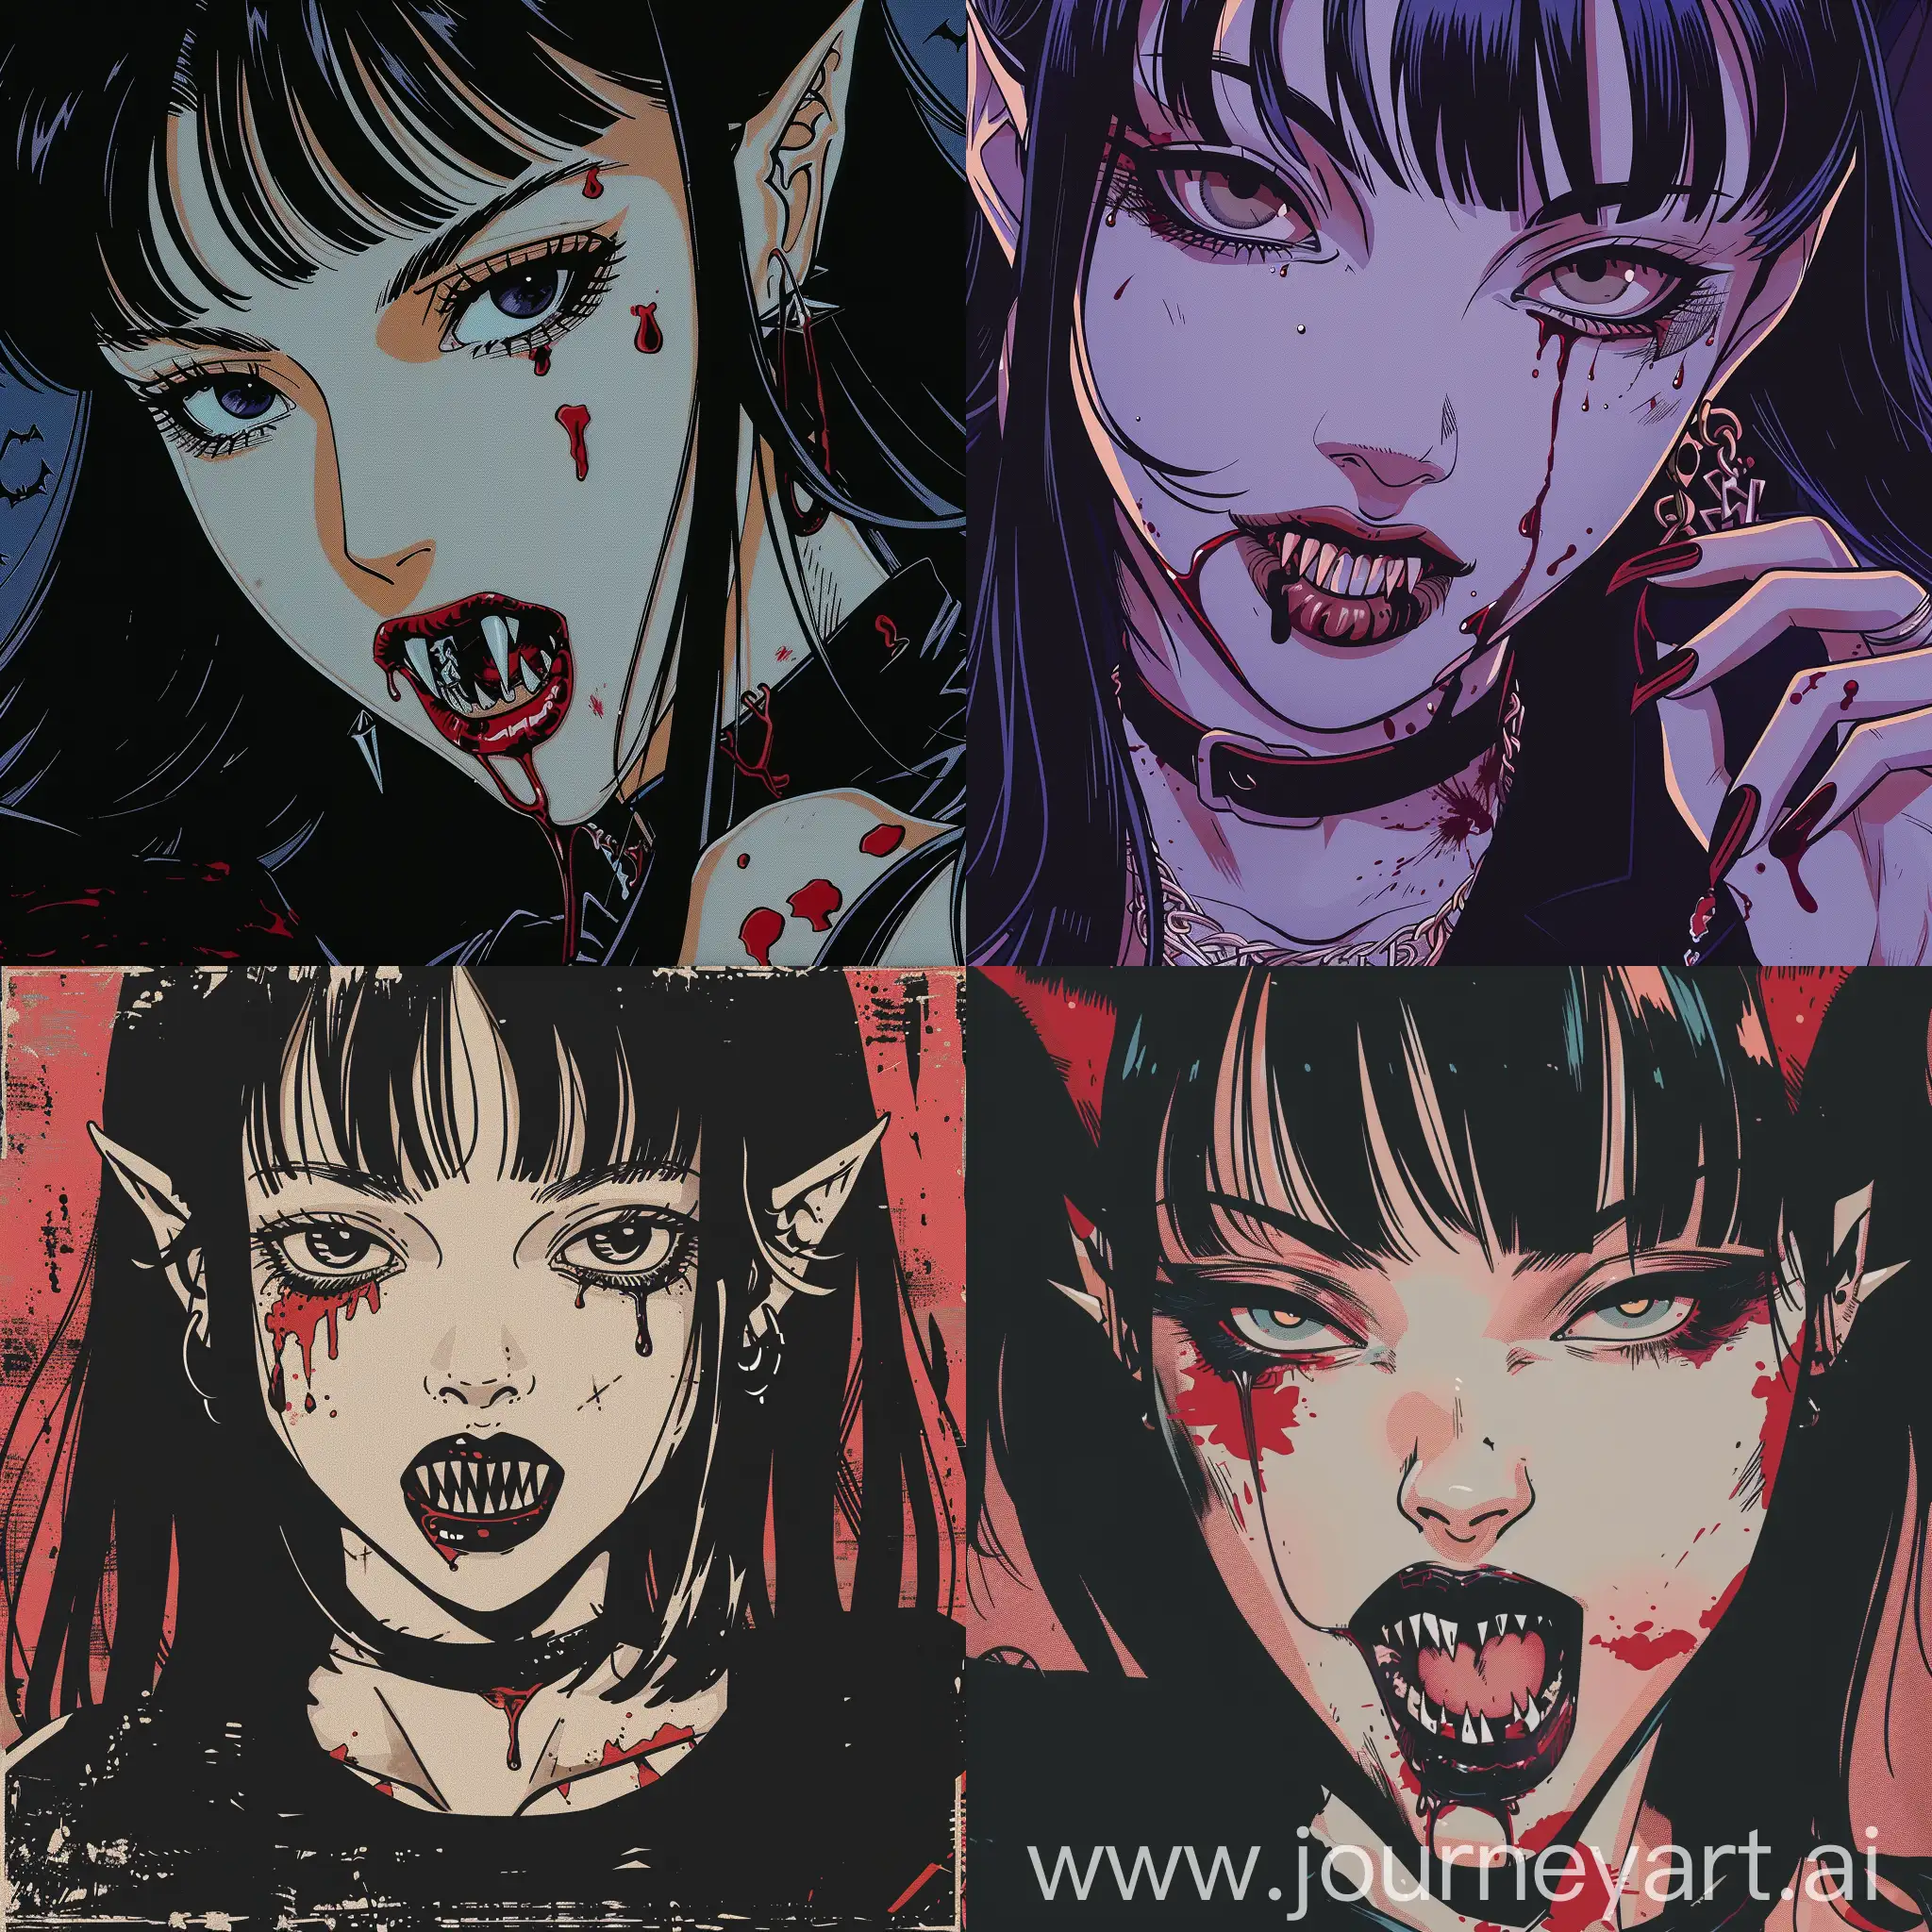 девушка вампир с клыками, и пятнами крови, в стиле аниме комиксов 90-х